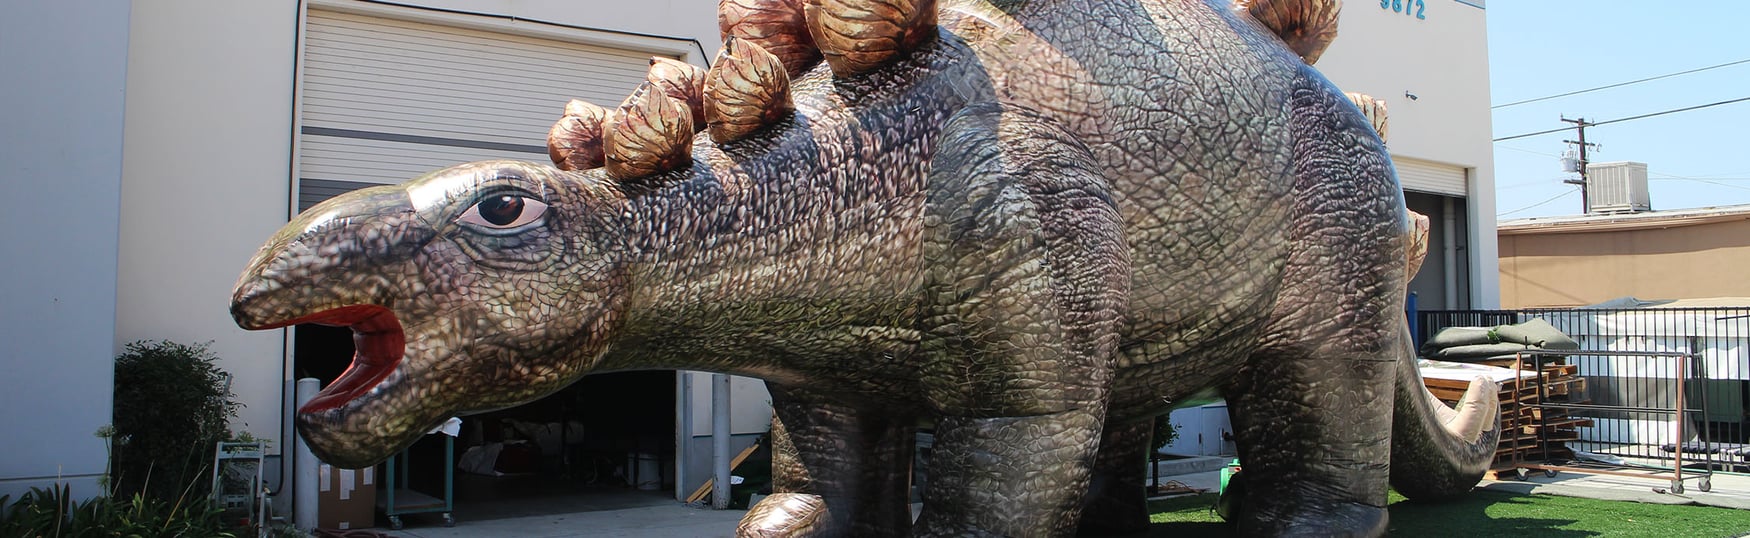 inflatable-stegosaurus-looking-sharp